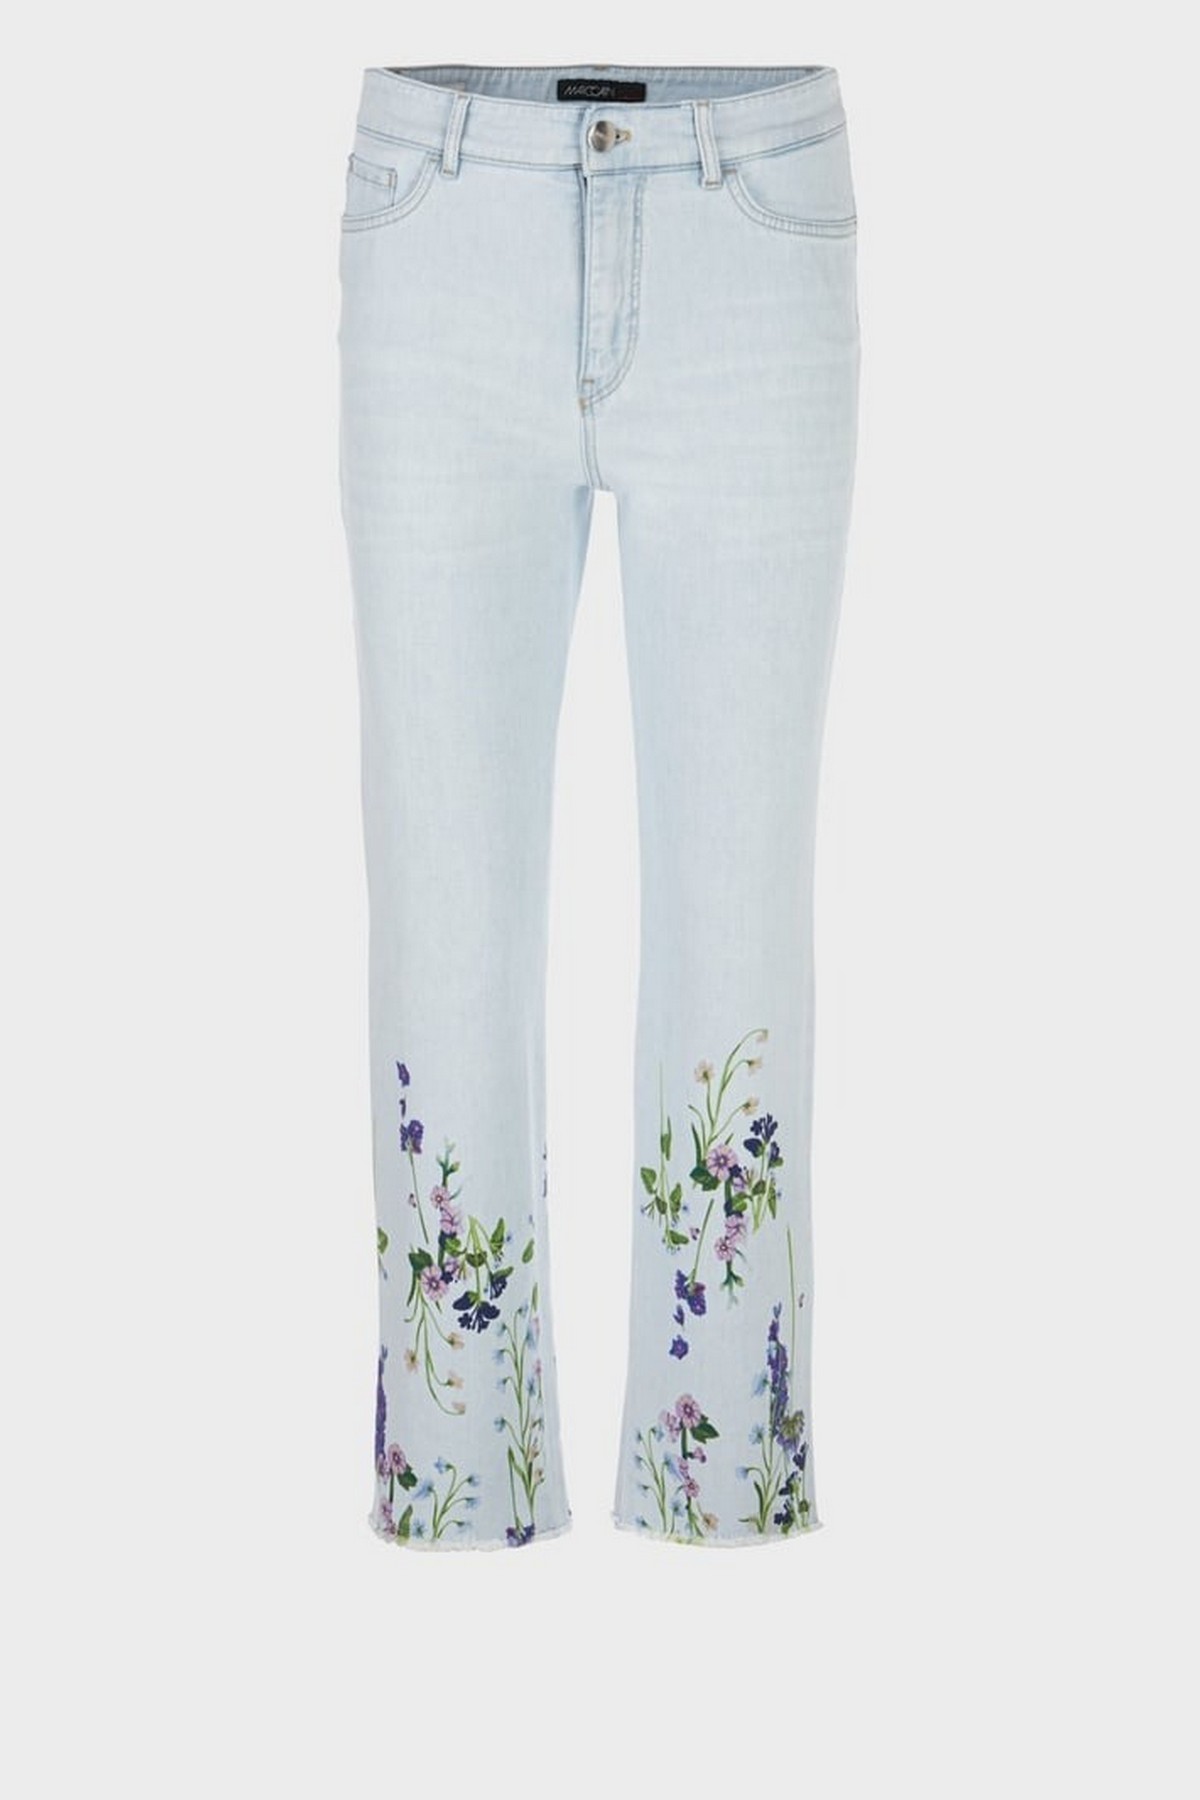 Jeans summer flower in de kleur light denim van het merk Marc Cain Collections